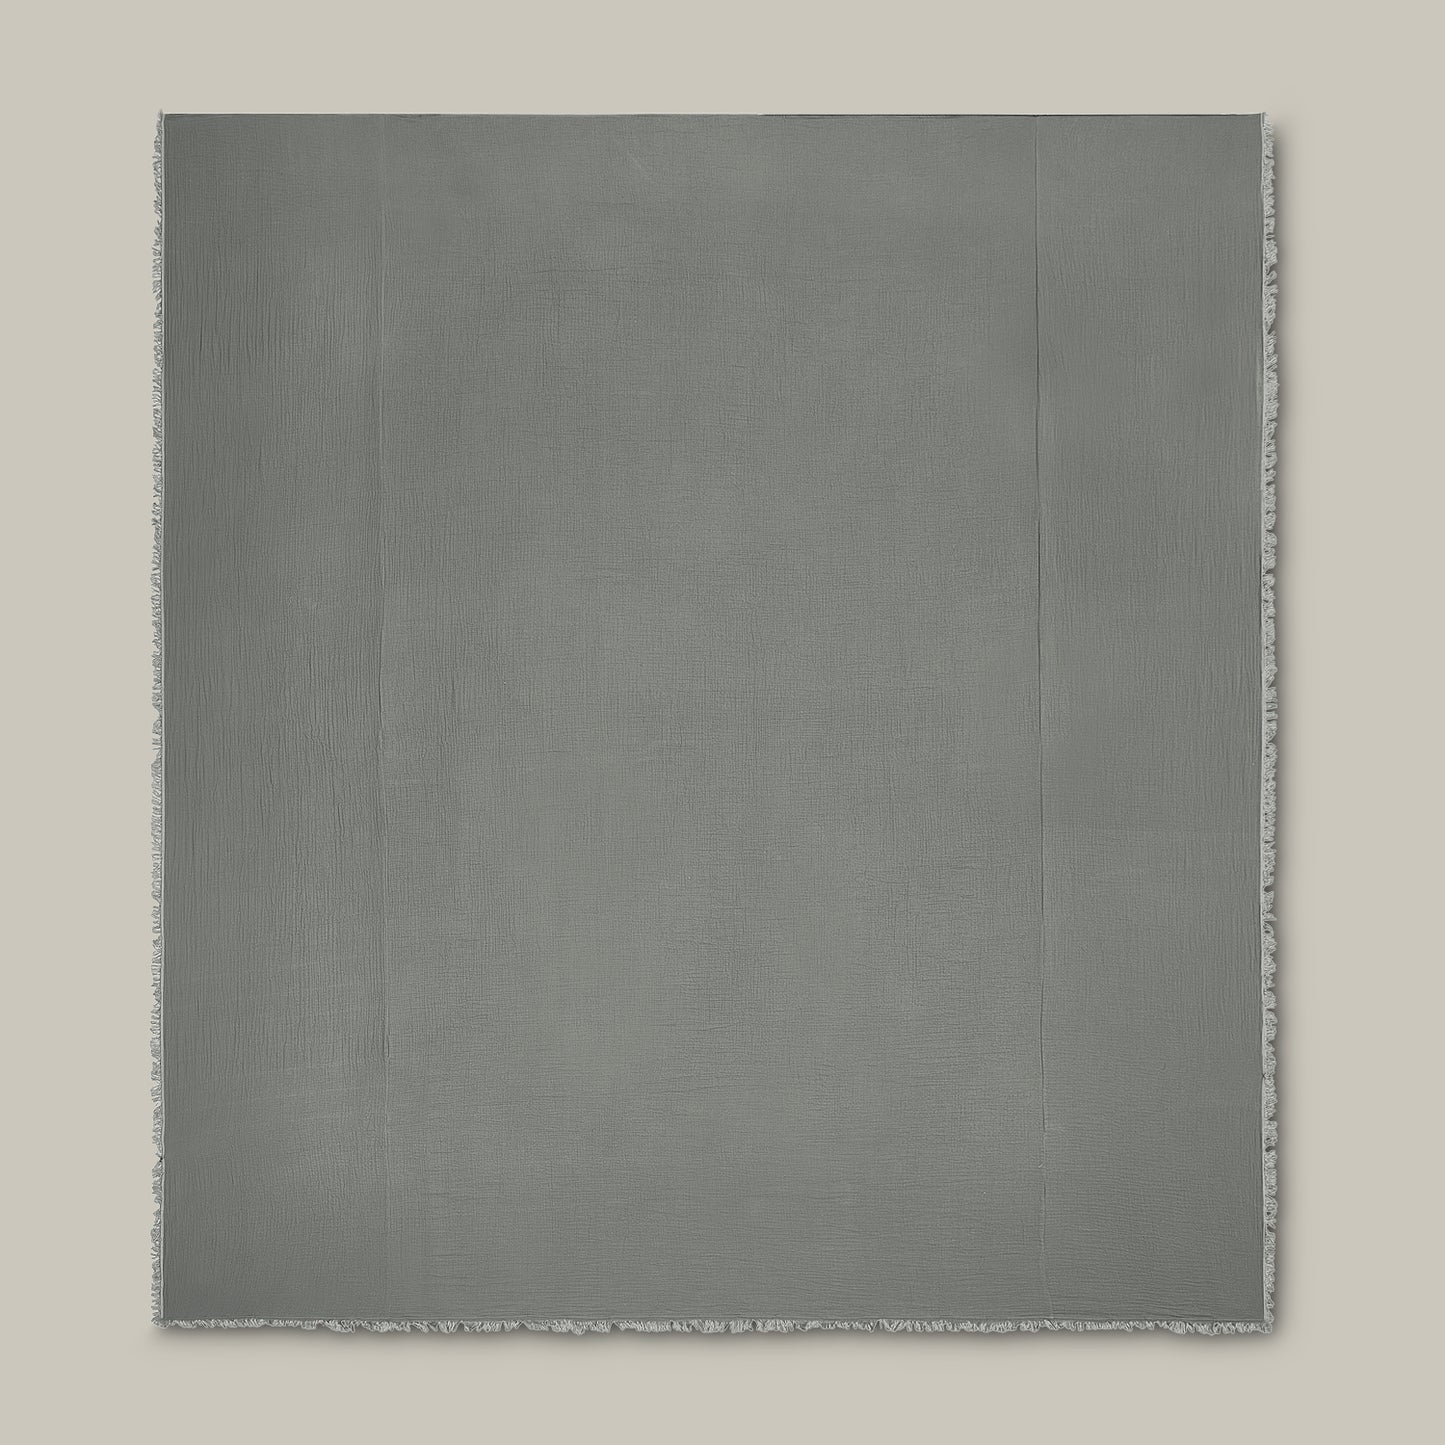 Ernestine Gauze 3-Piece Bedspread Set (Grey)